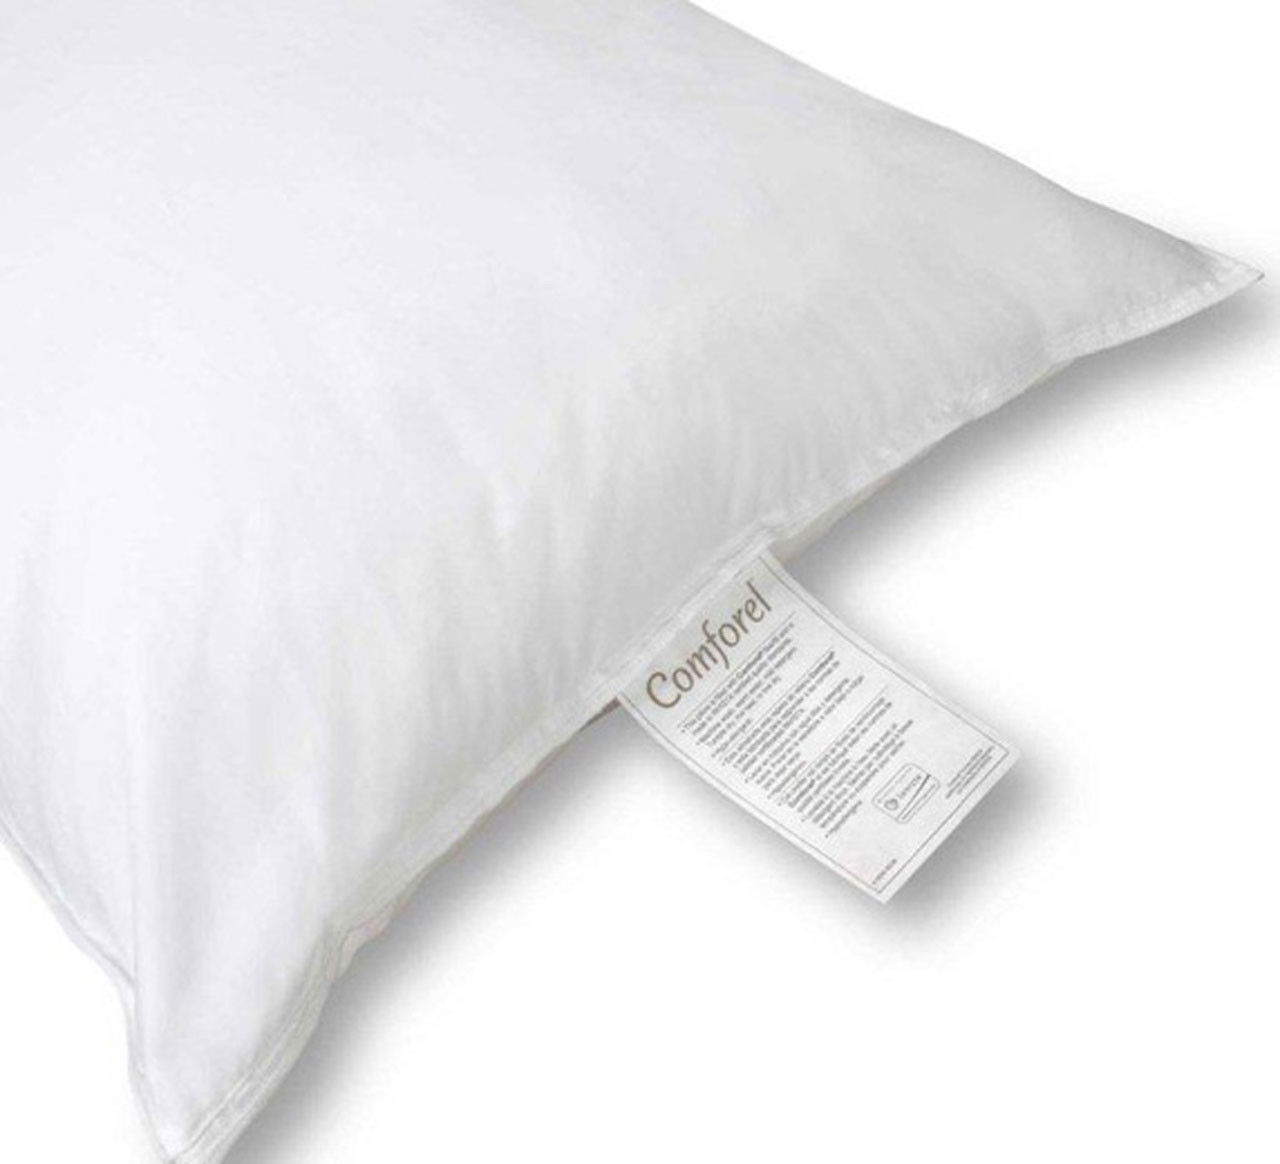 What makes Comforel® Pillows unique?